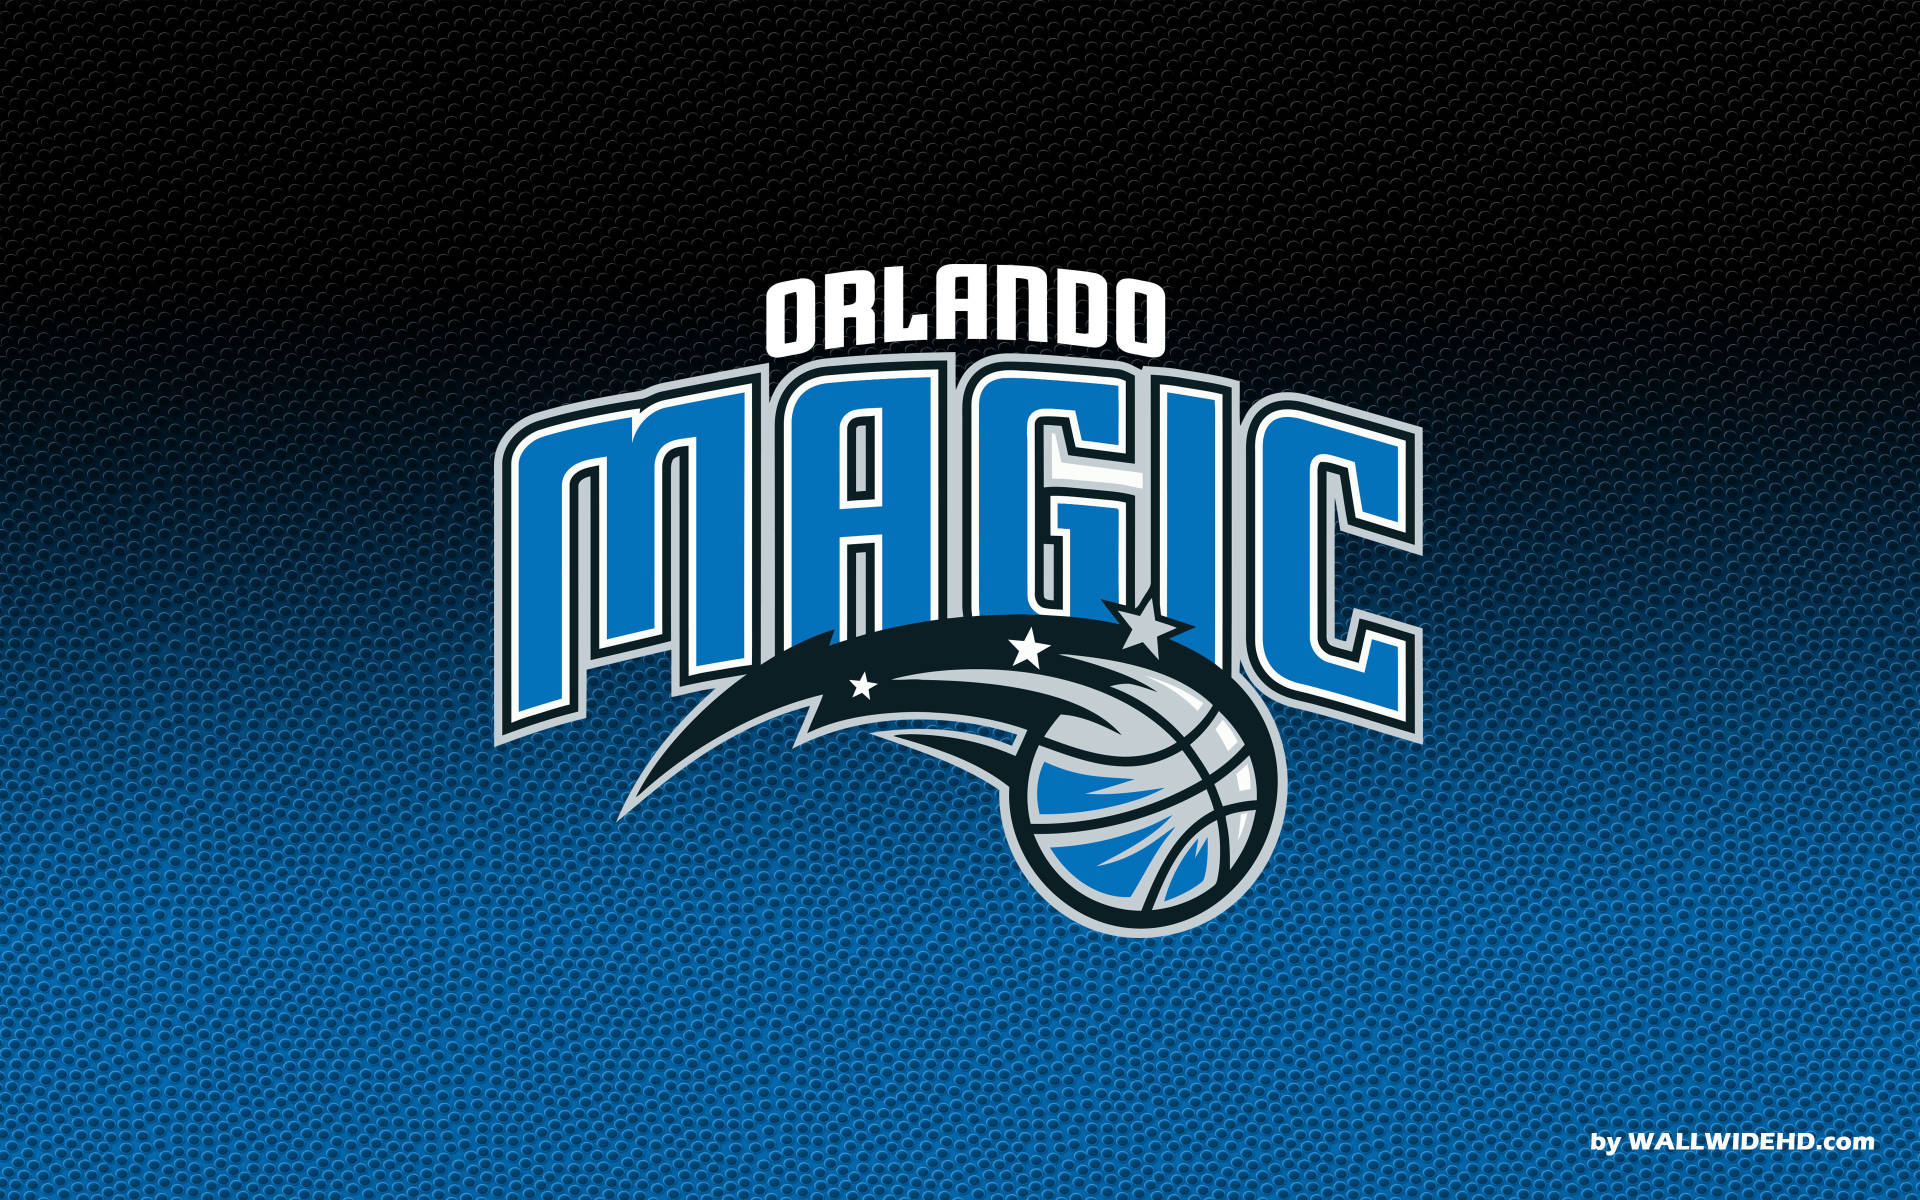 Orlando Magic In Basketball Texture